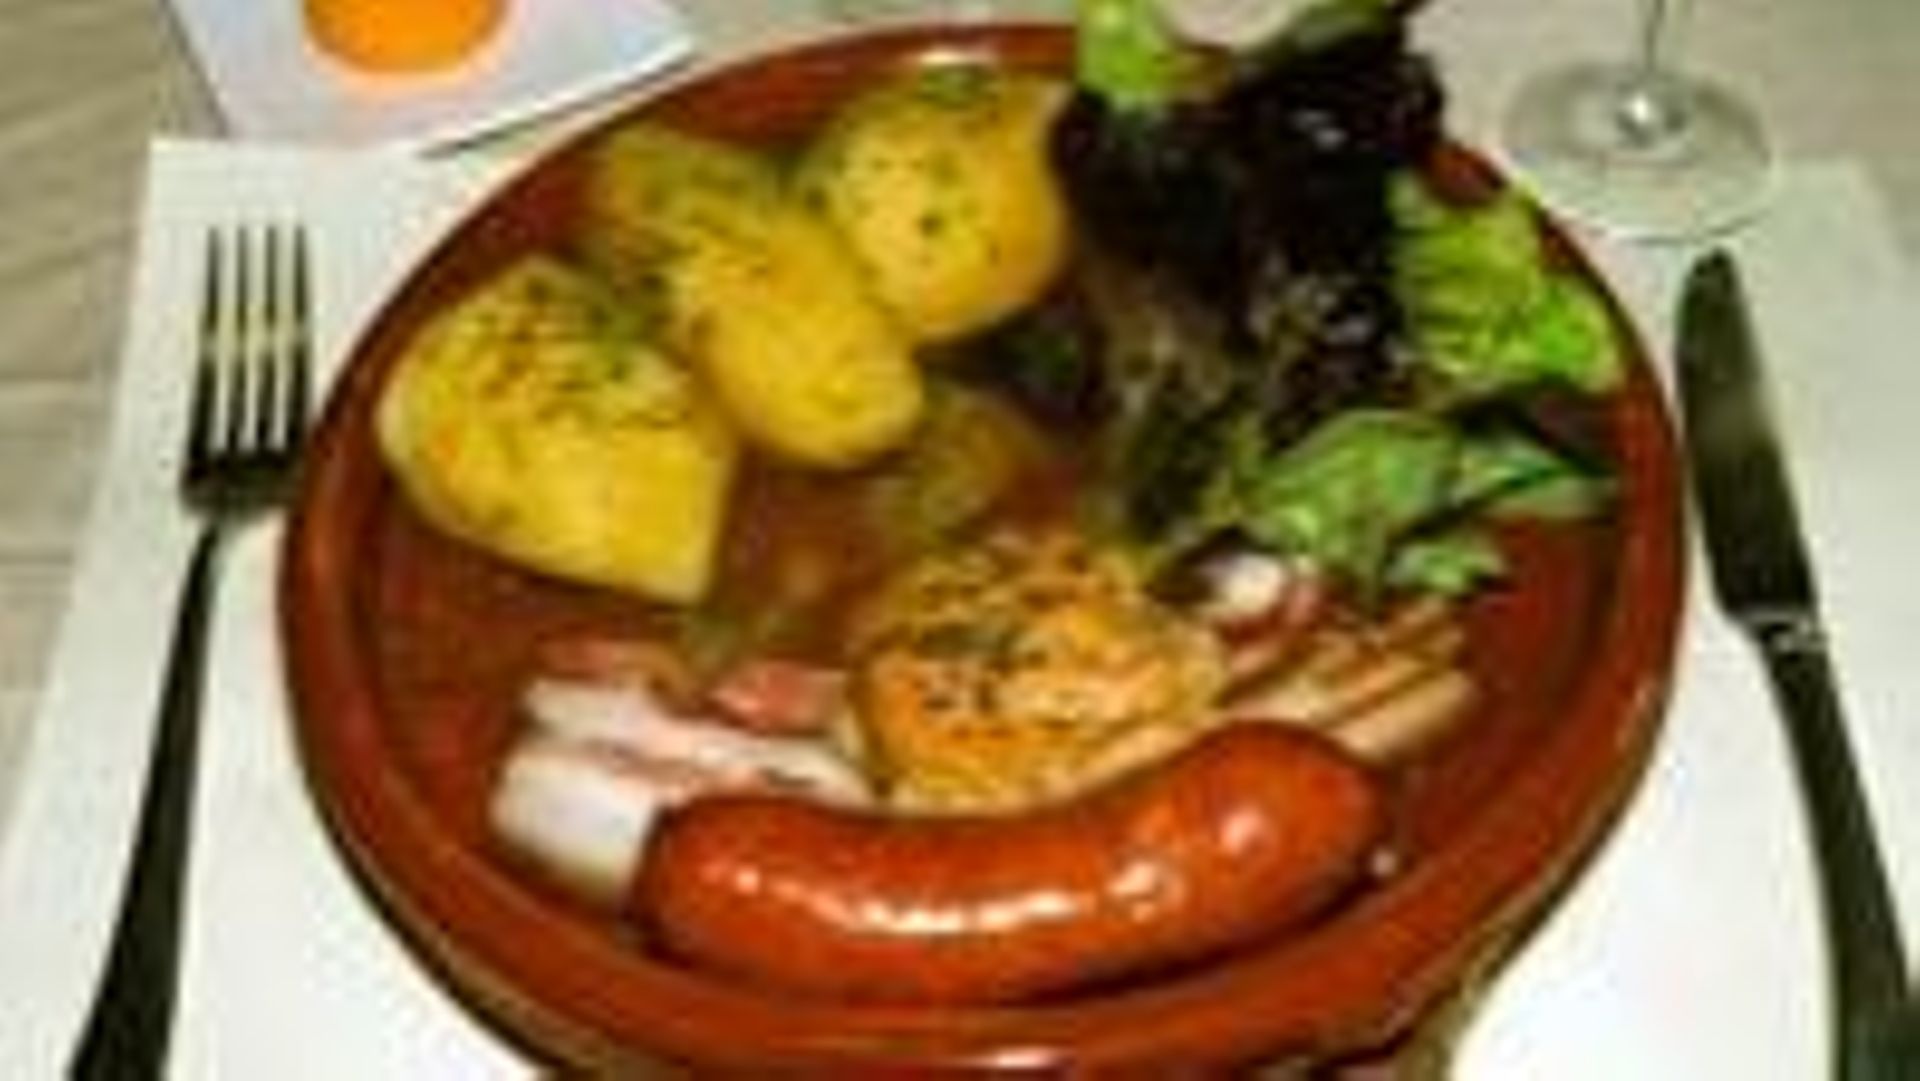 Découvrez "Les patates aux rousses", une recette typique de la cité des Baudets à Bertrix